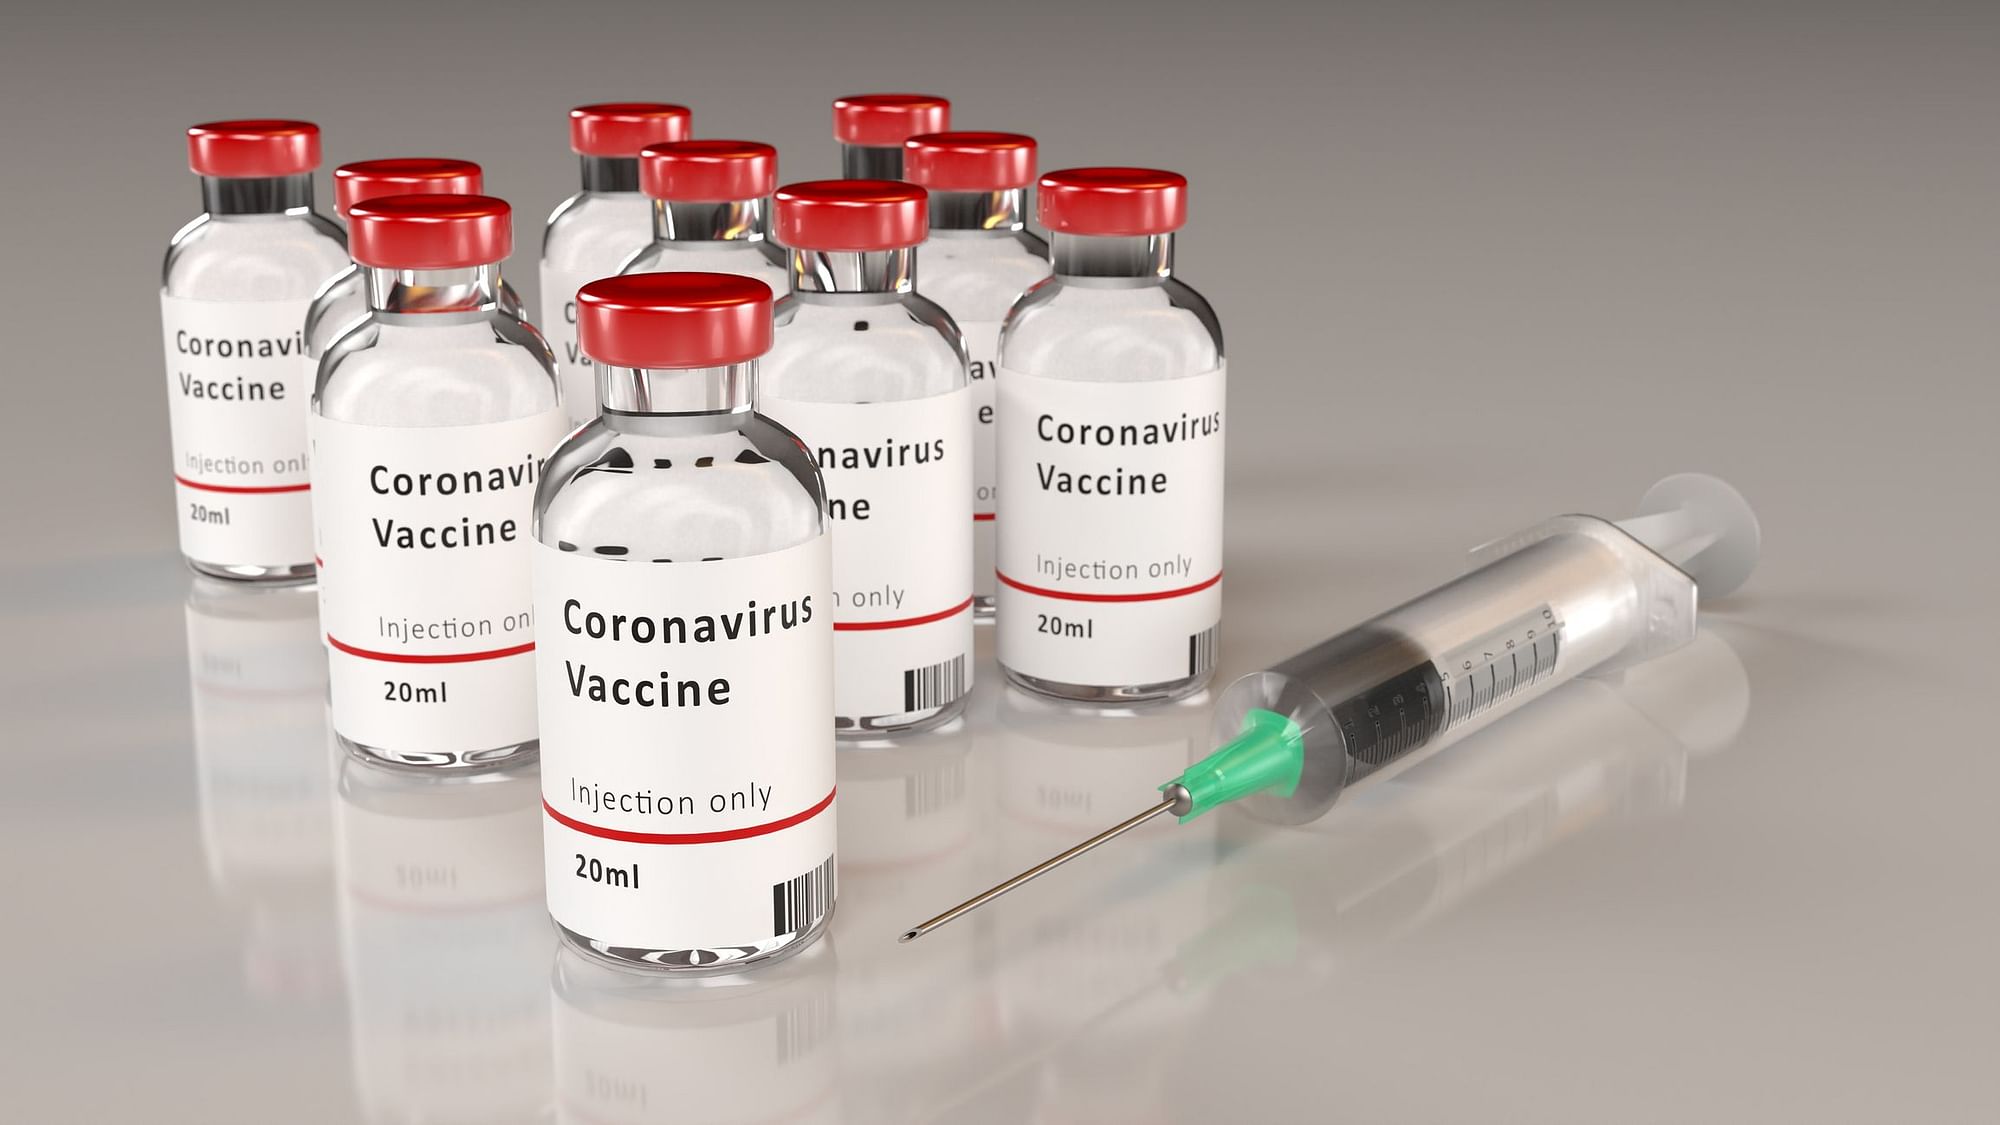 वैक्सीन को देश के इमरजेंसी प्रोग्राम के तहत इस्तेमाल किया गया है